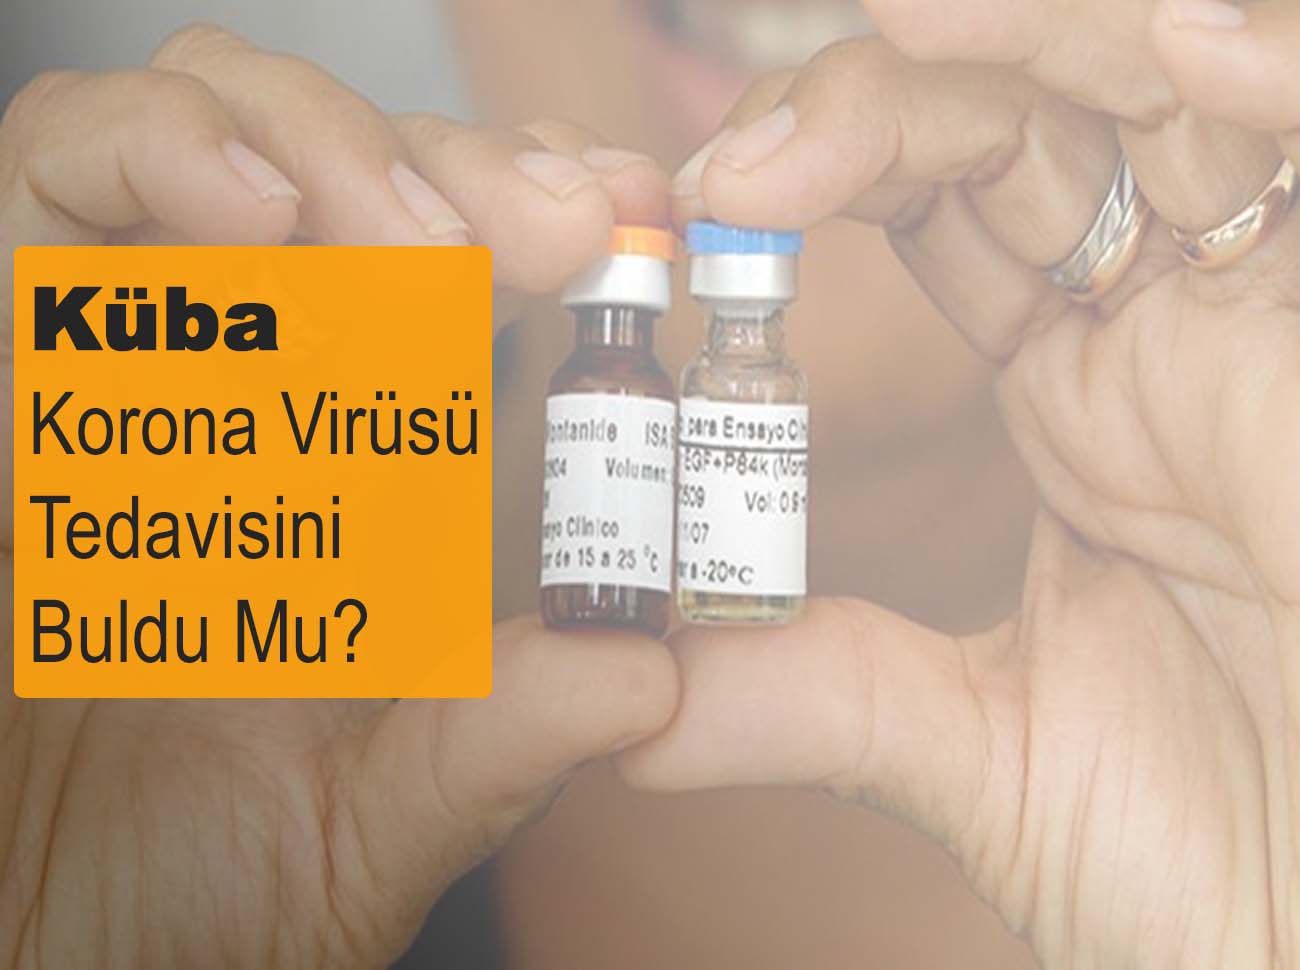 Küba Korona Virüsü İçin Tedavi Buldu Mu